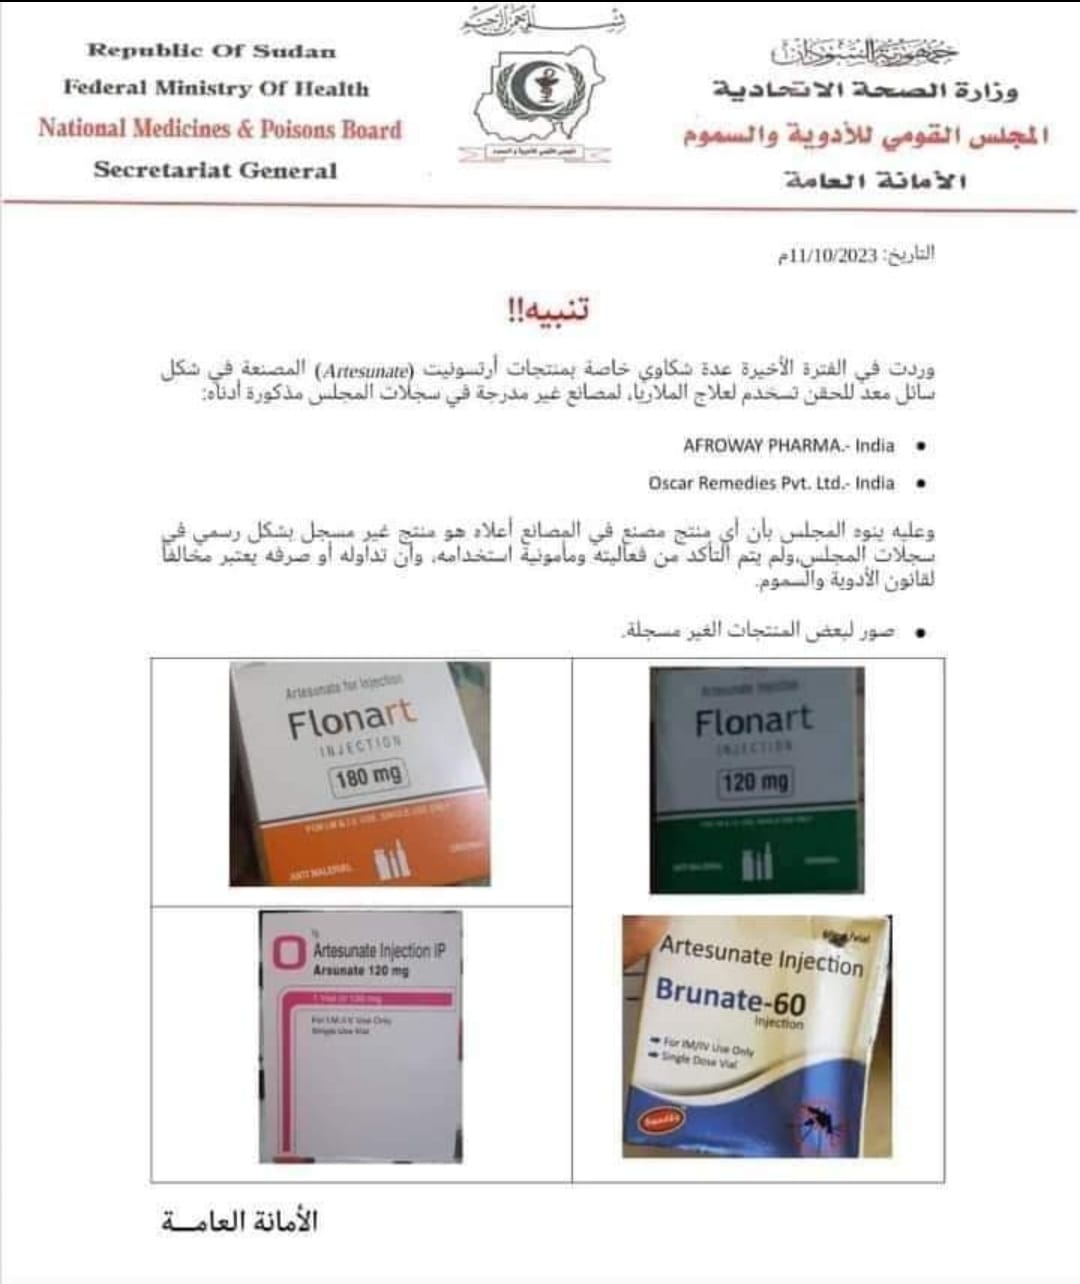 منشور مجلس الأدوية والسموم السوداني